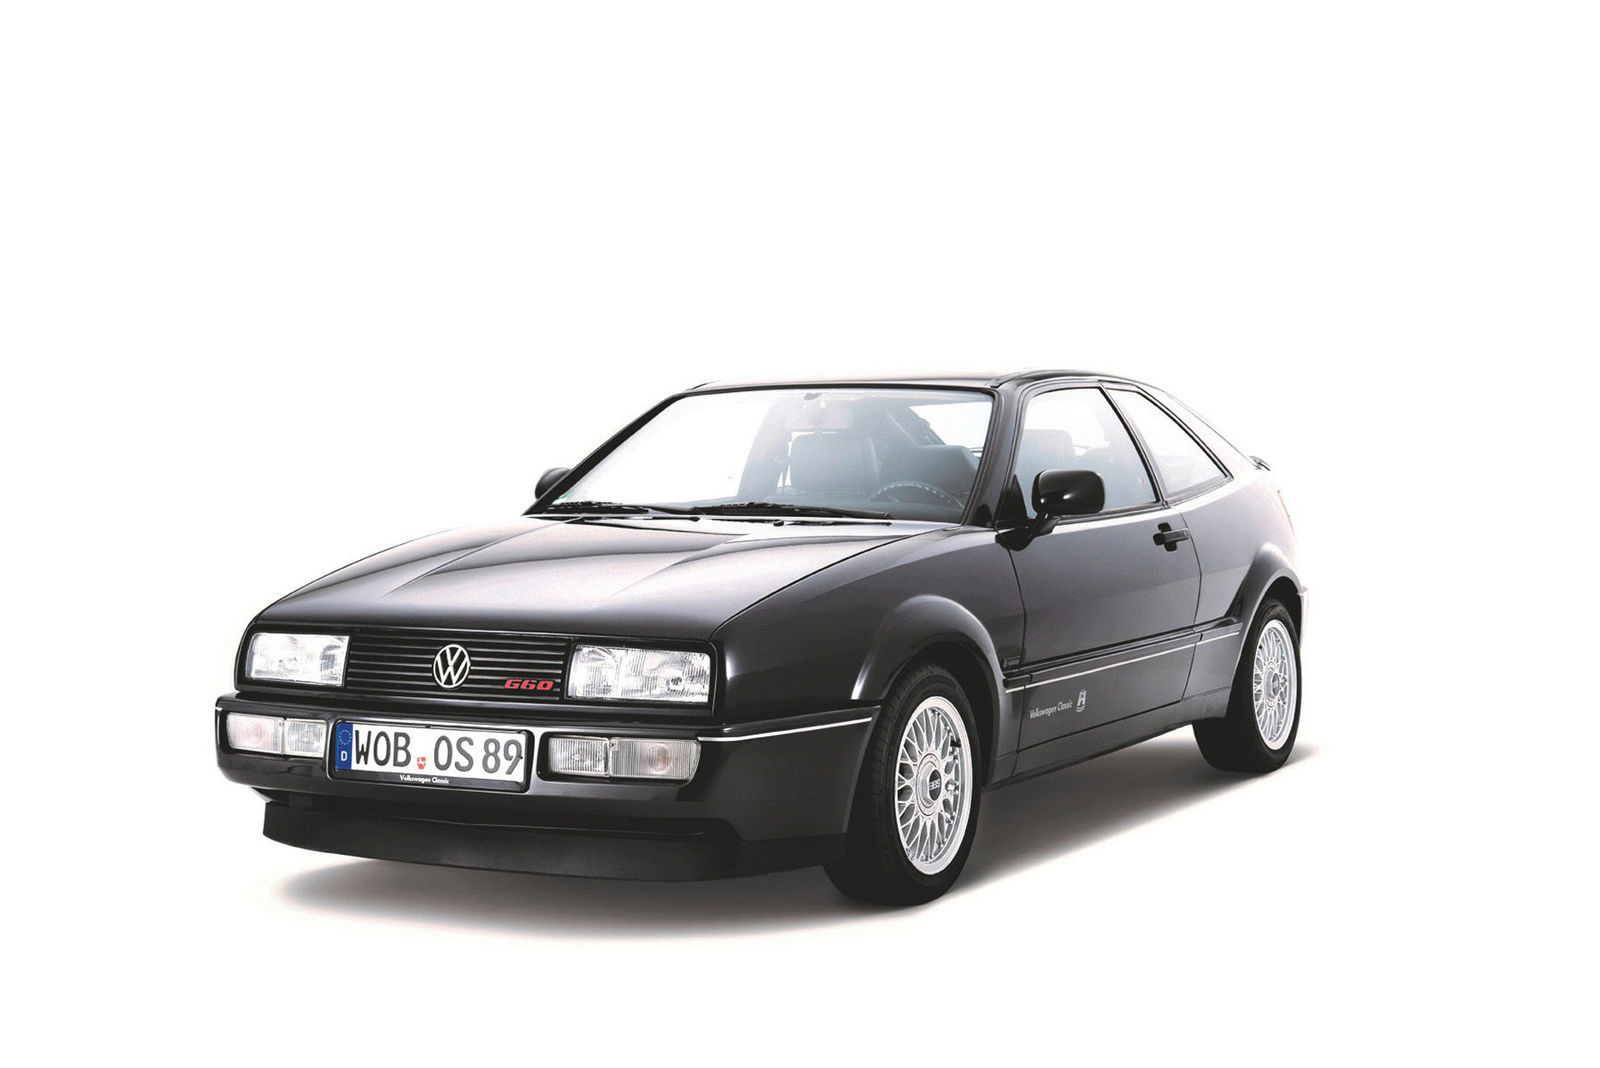 Volkswagen at the Bremen Classic Motorshow: happy birthday, Corrado!